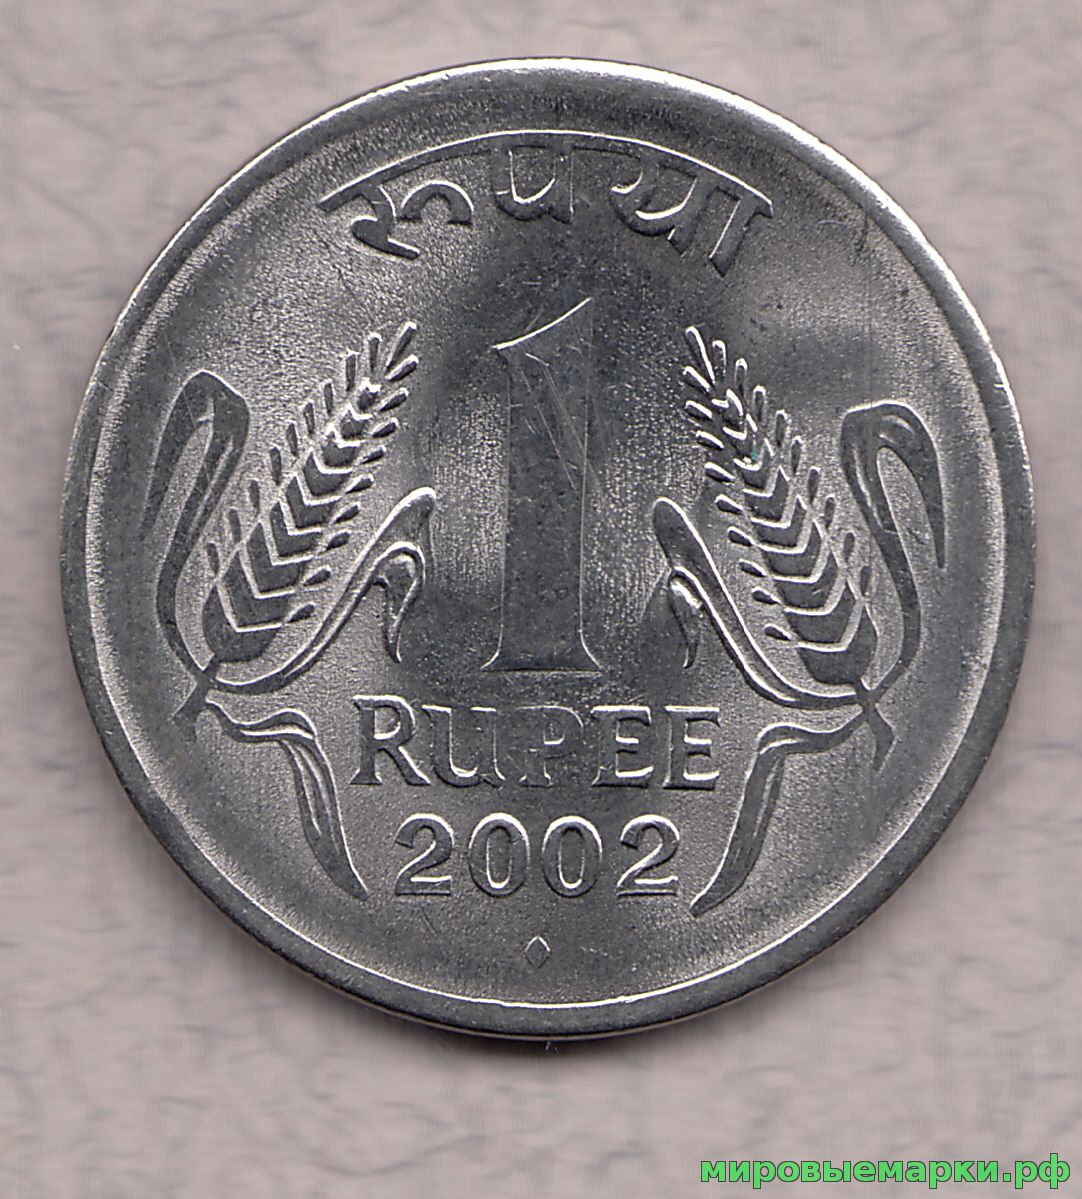 Индия 2002 г. 1 рупия, UNC(мешковые)